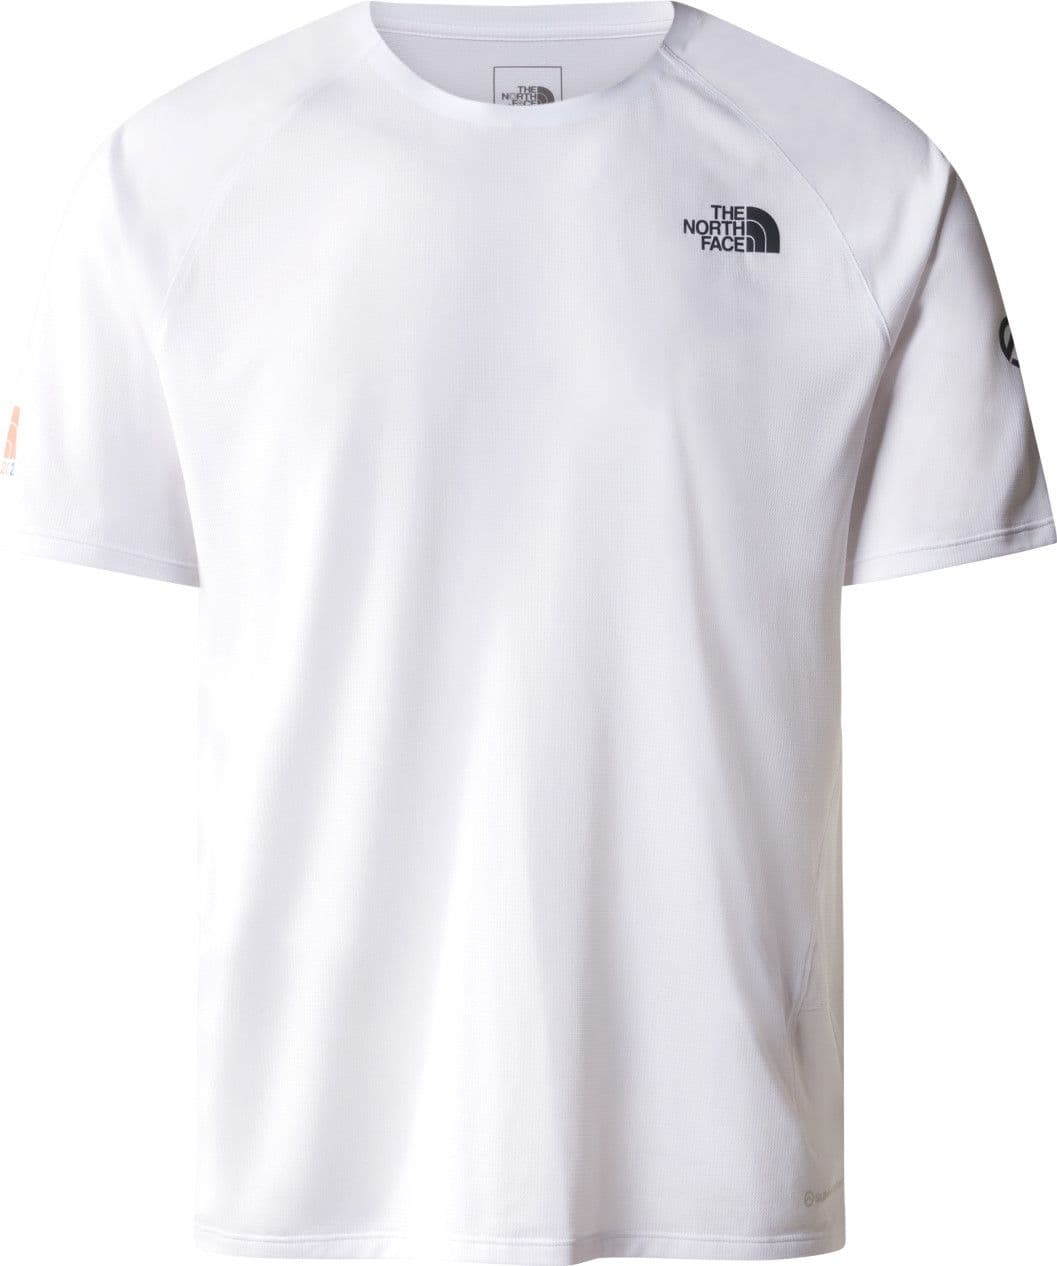 The North Face Summit High Trail Run Technical T-Shirt White